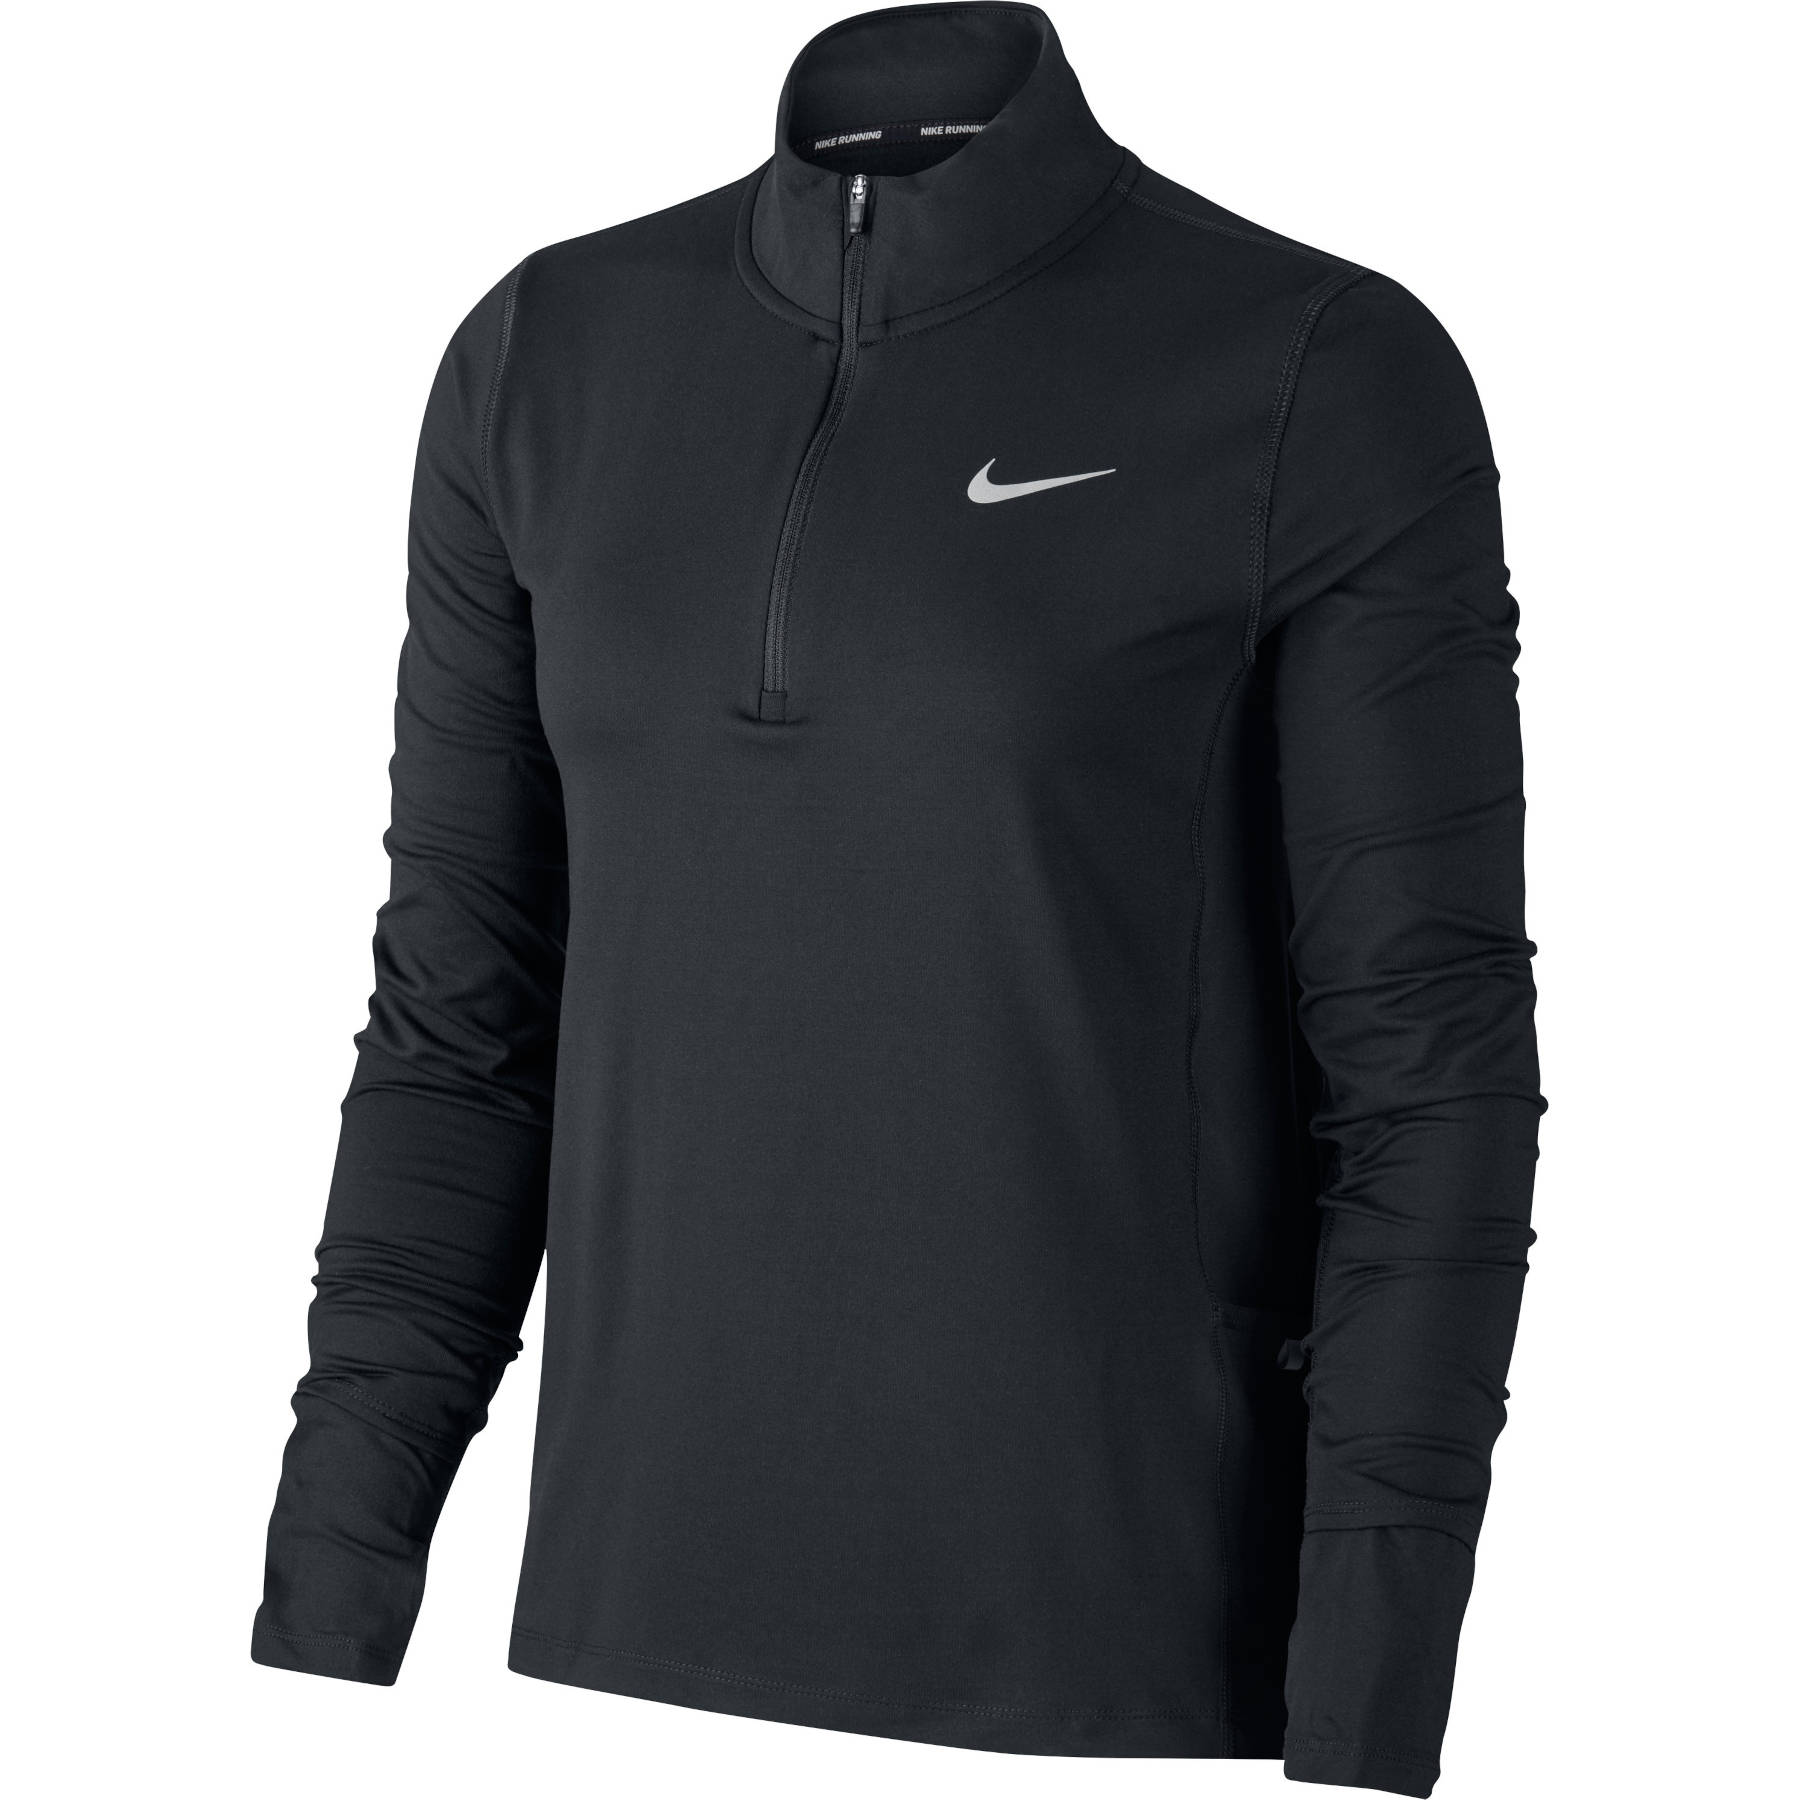 Produktbild von Nike Rundhalsshirt mit 1/2-Reissverschluss für Damen - black/reflectivity CU3220-010